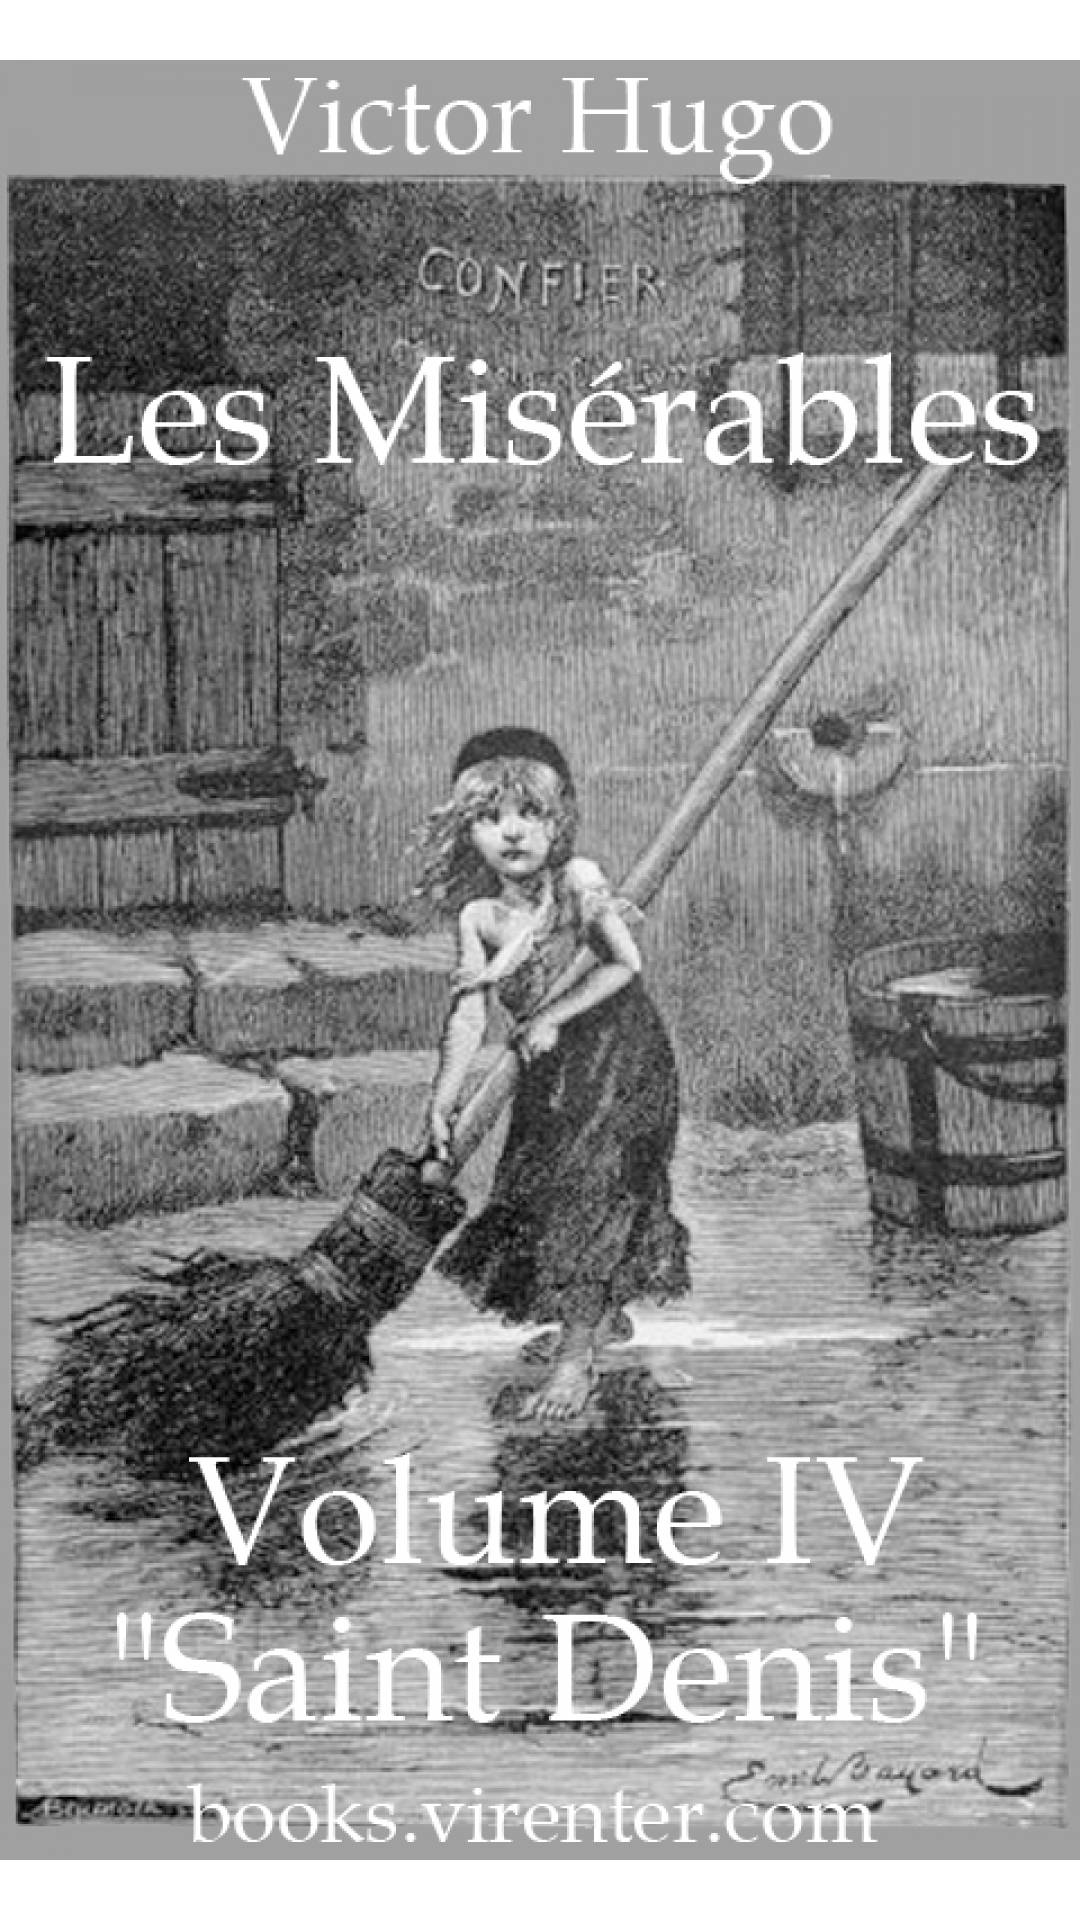 Victor Hugo - Les Misérables, Volume IV ('Saint Denis')